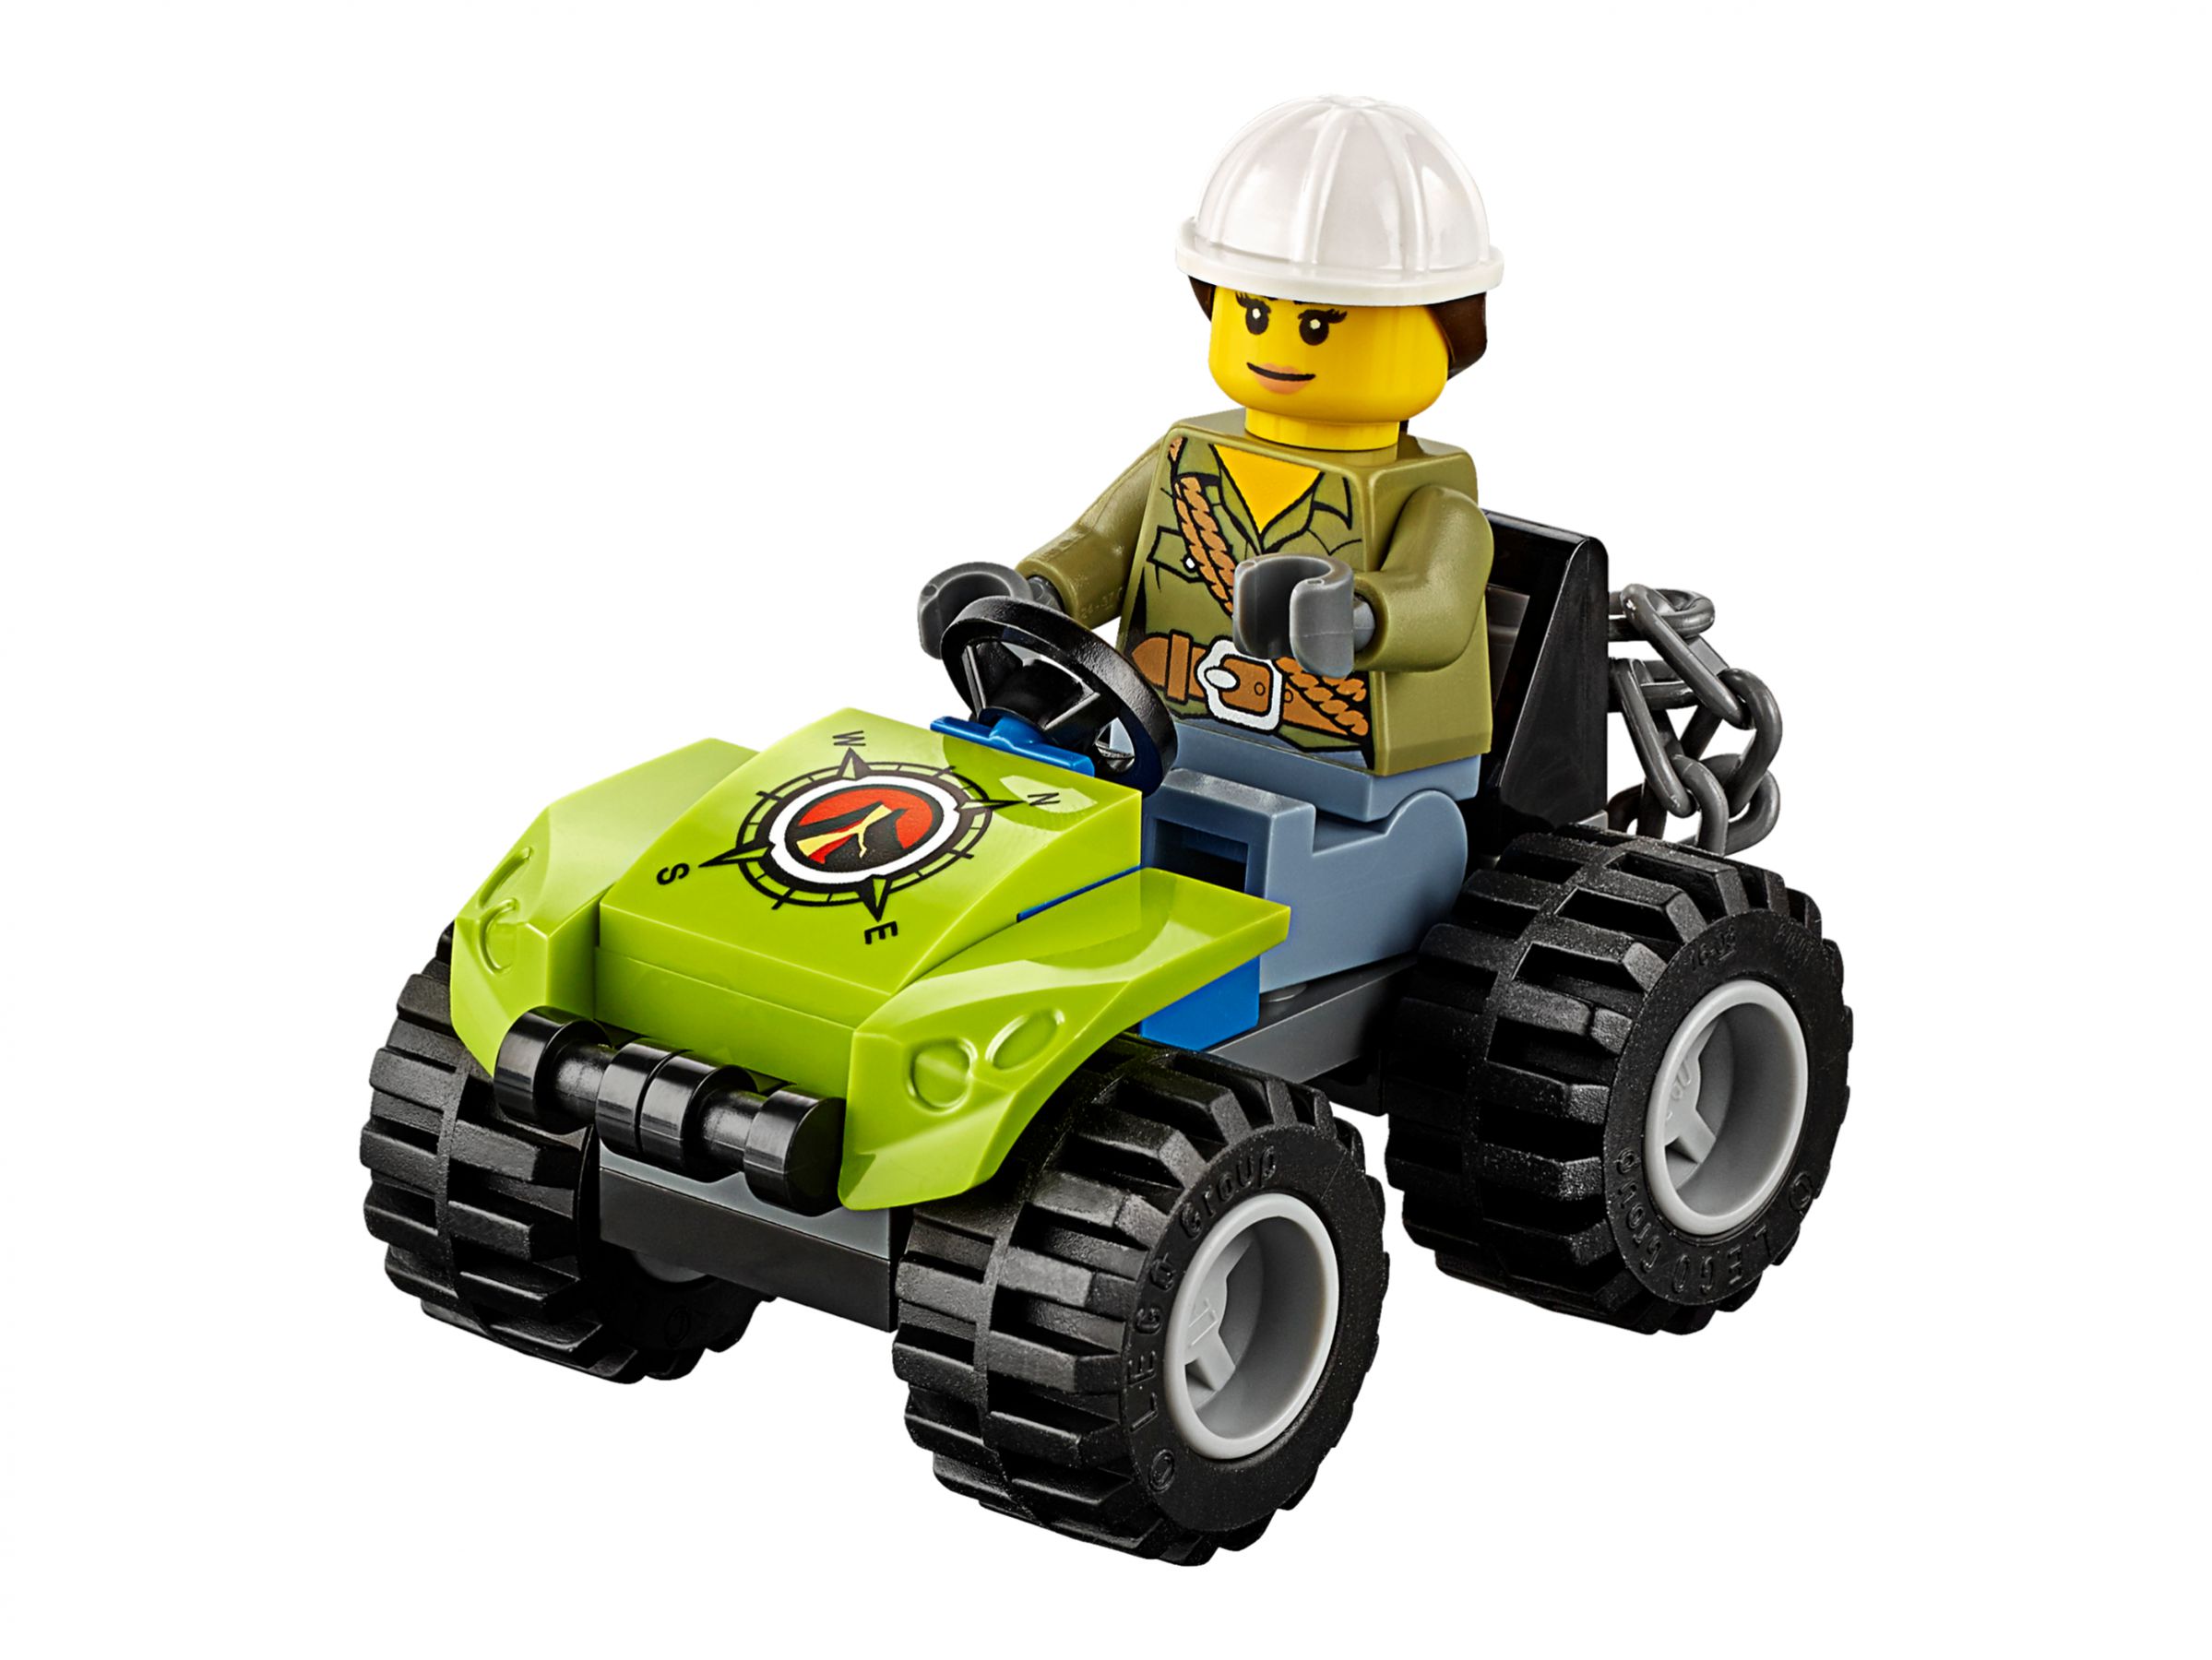 LEGO City 60122 Vulkan-Raupe LEGO_60122_alt4.jpg